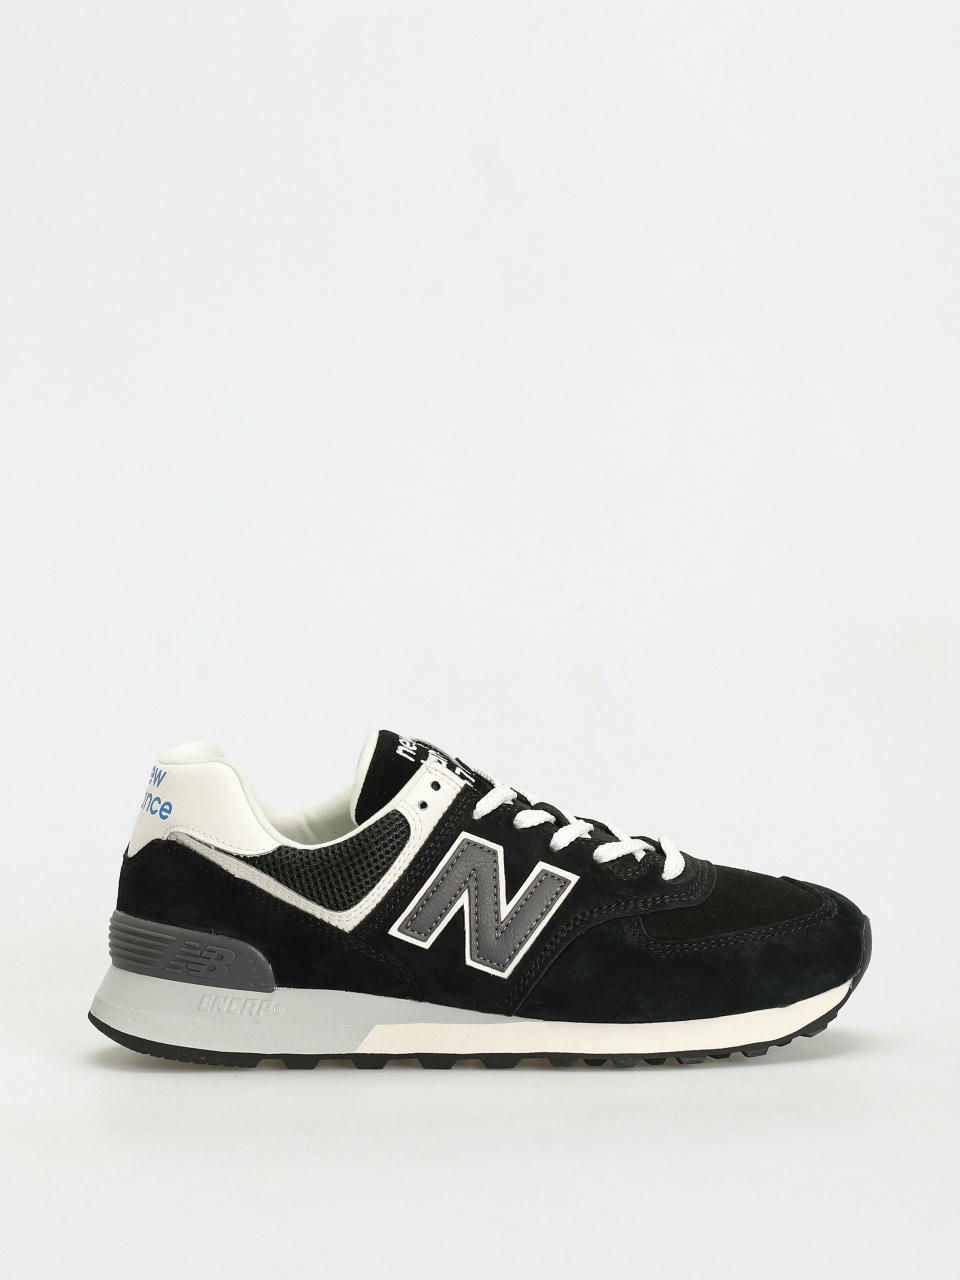 New Balance 574 Shoes (apollo grey)